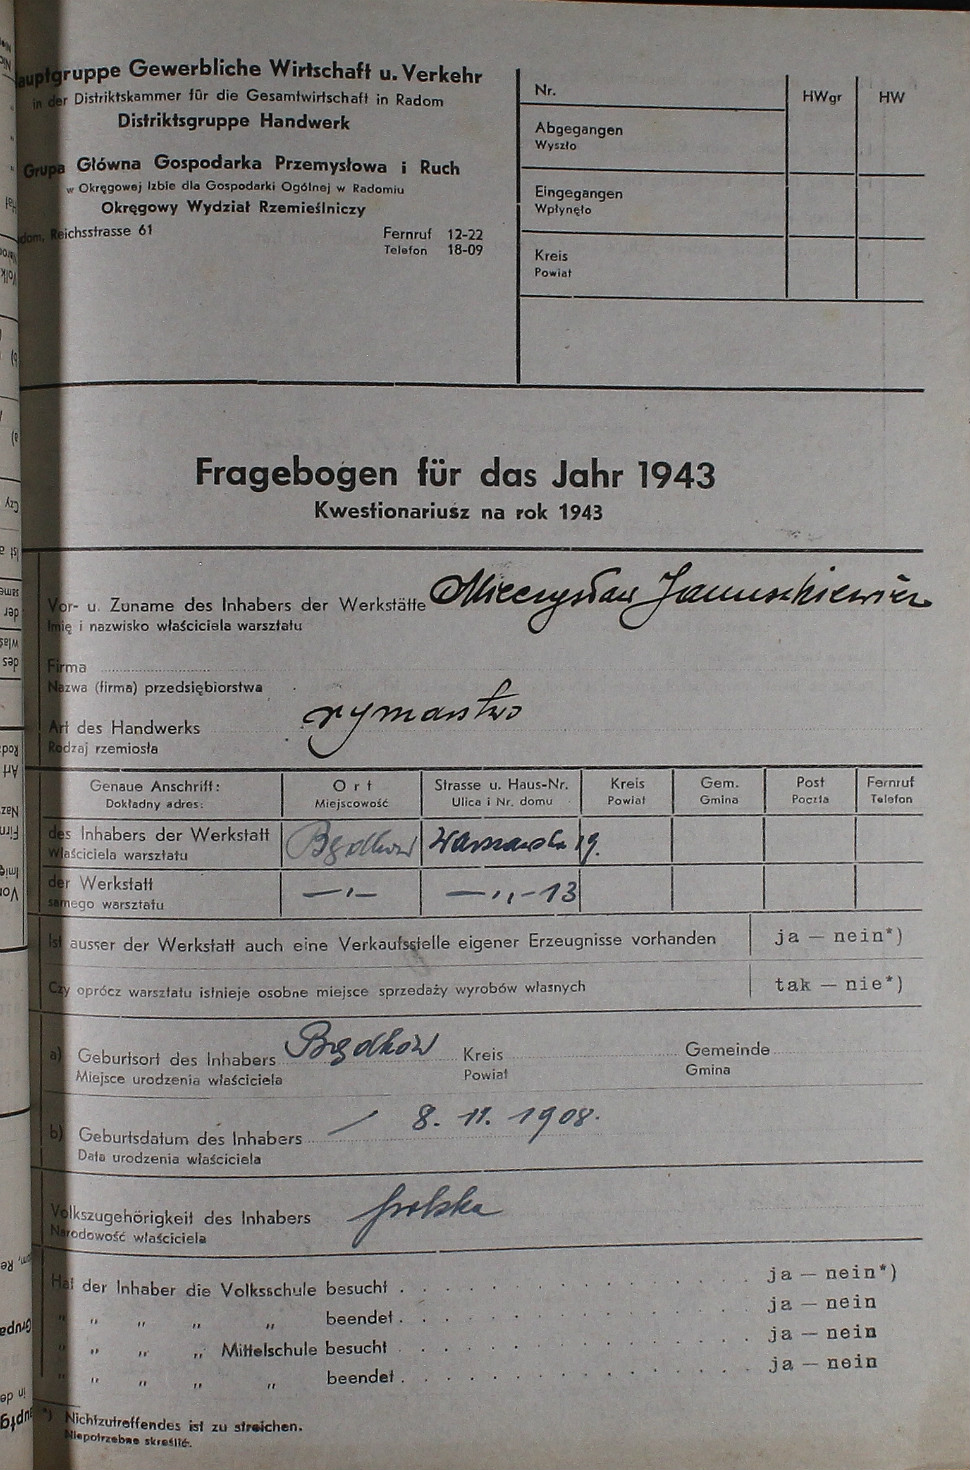 Kwestionariusz właściciela warsztatu rzemieślniczego, 1943